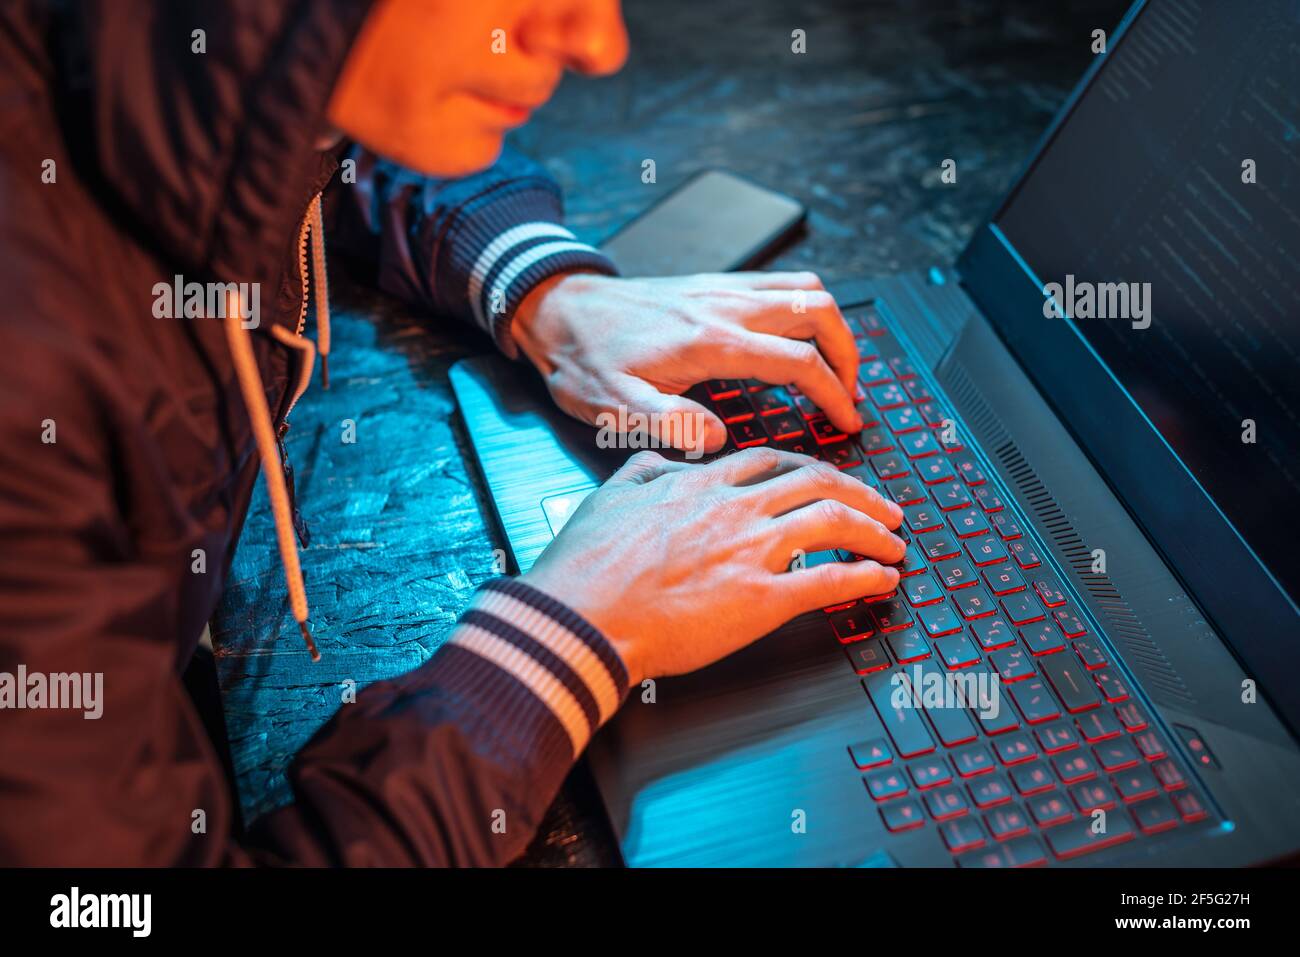 Un hacker à capuchon tape sur un clavier d'ordinateur portable dans une pièce sombre sous une lumière de néon. Le concept de la cybercriminalité et du vol d'identité Banque D'Images